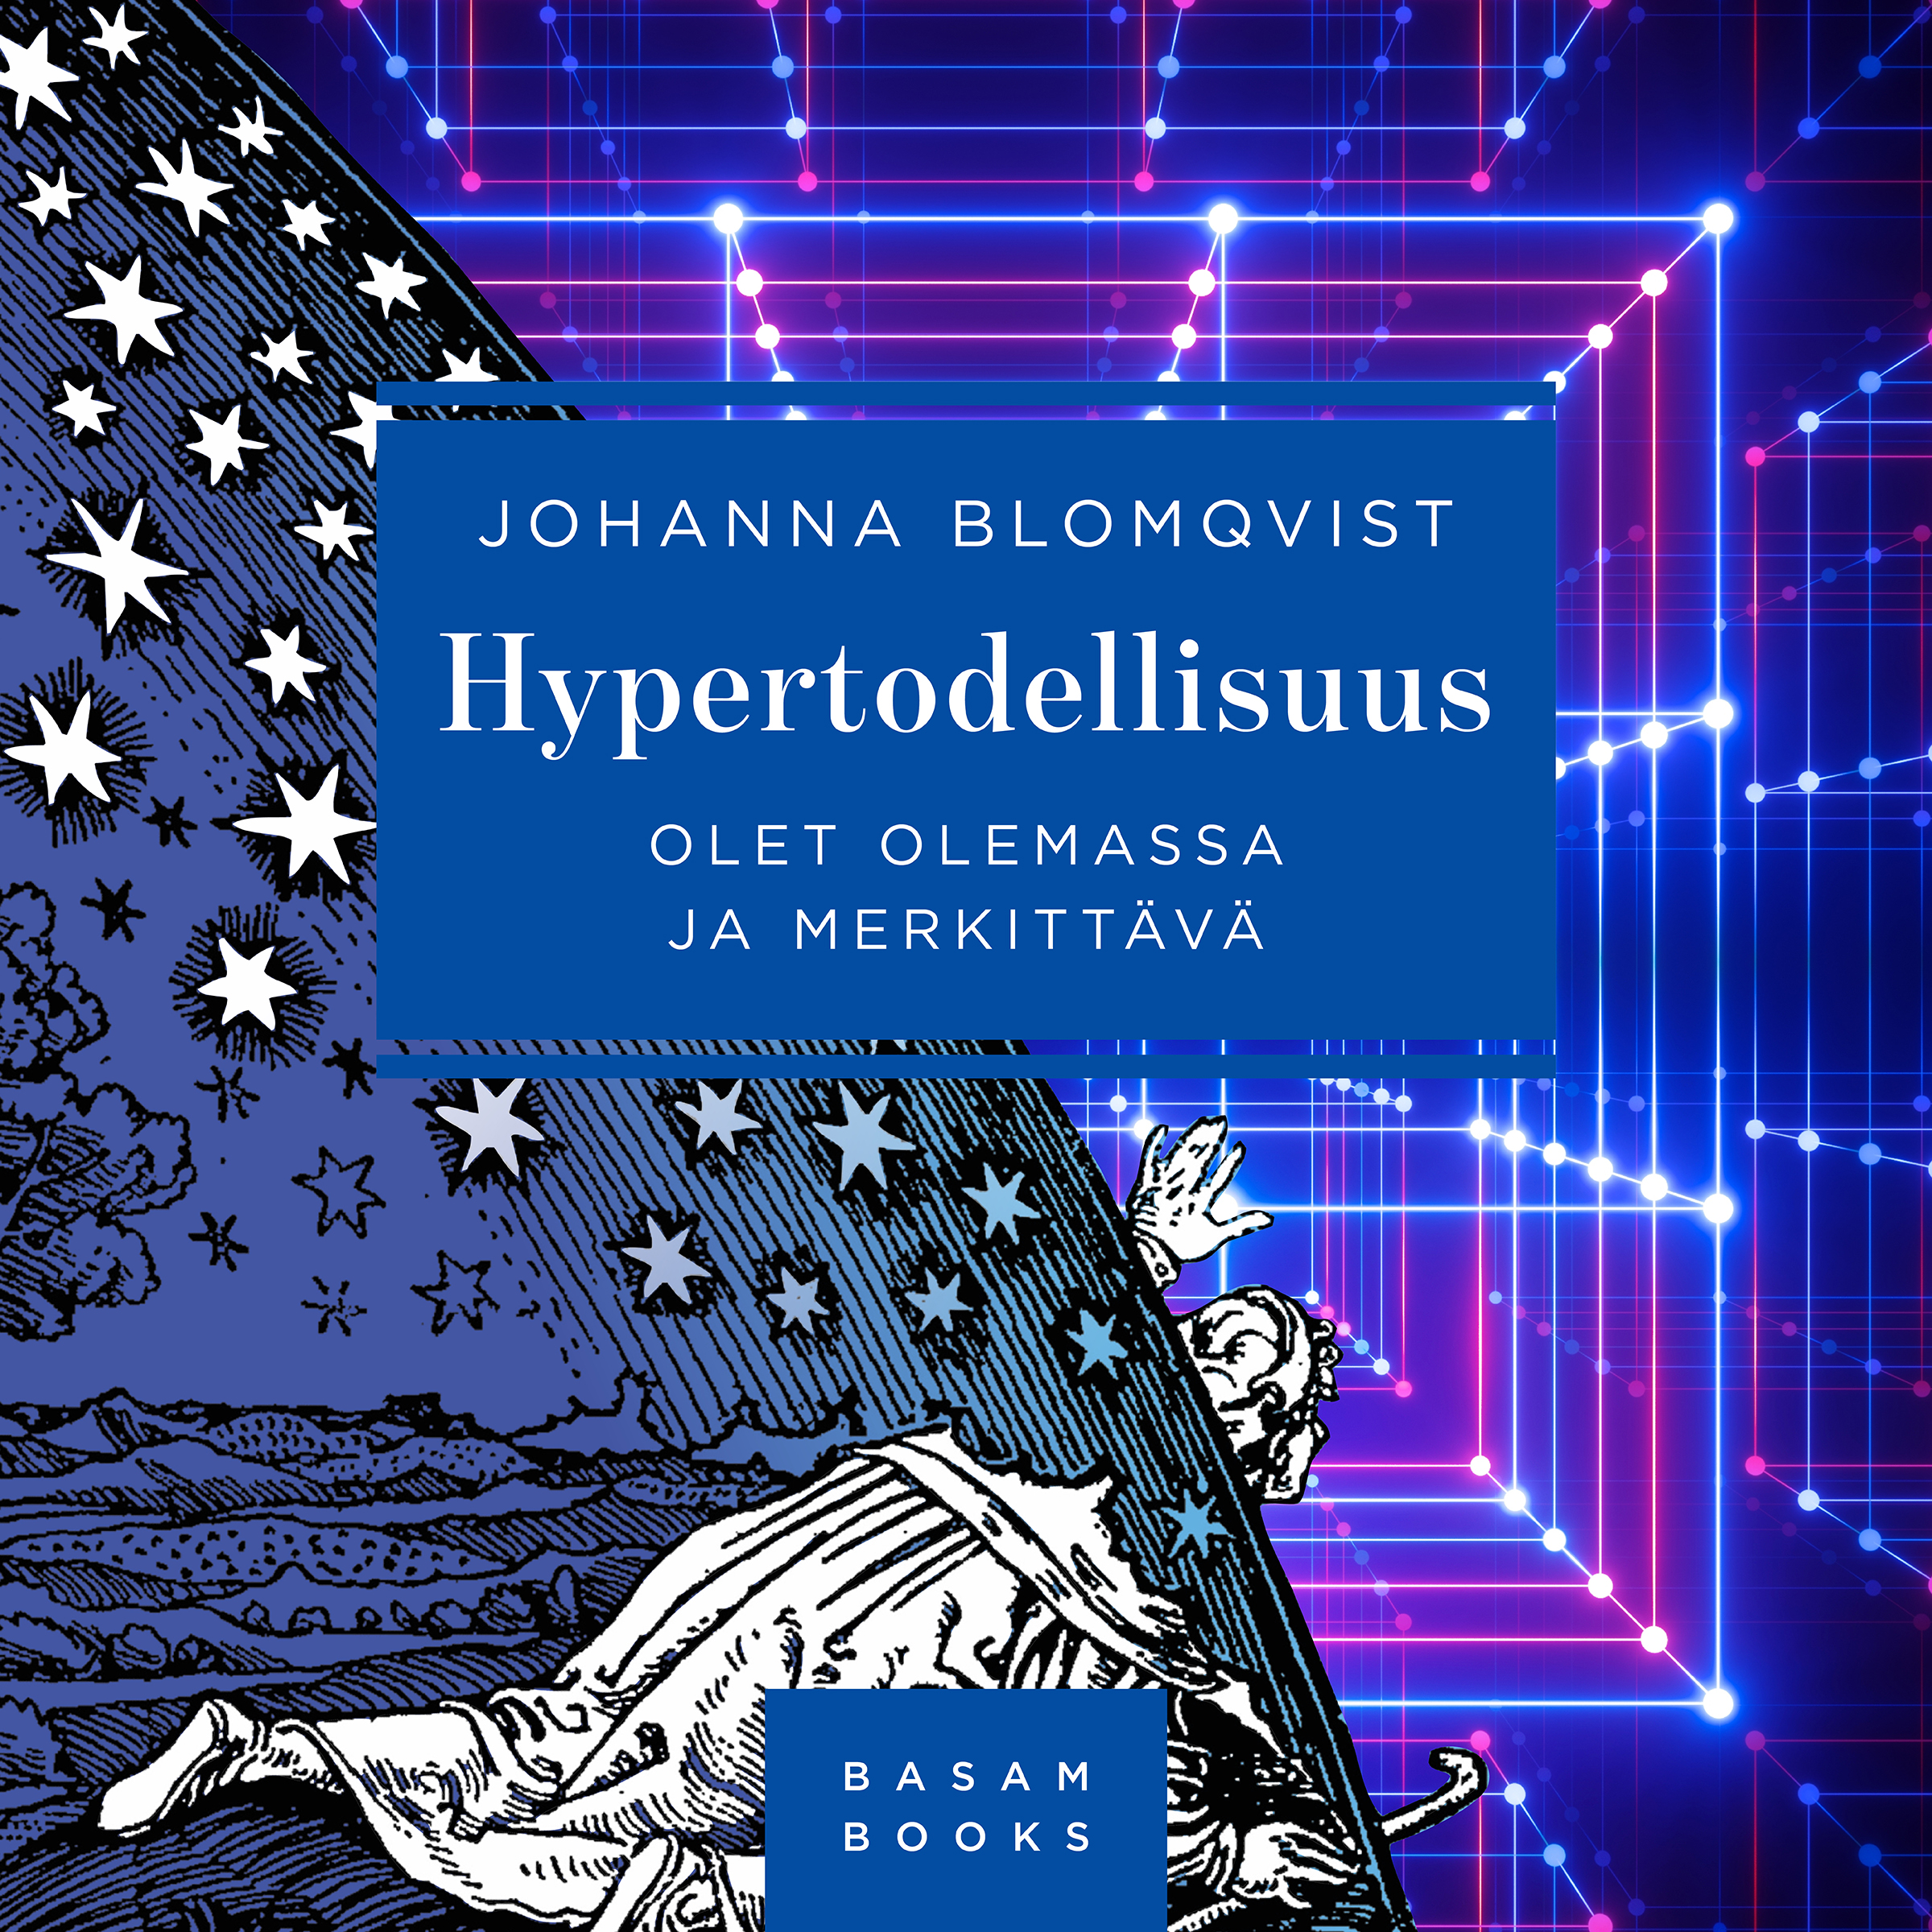 Blomqvist, Johanna - Hypertodellisuus: Olet olemassa ja merkittävä, audiobook